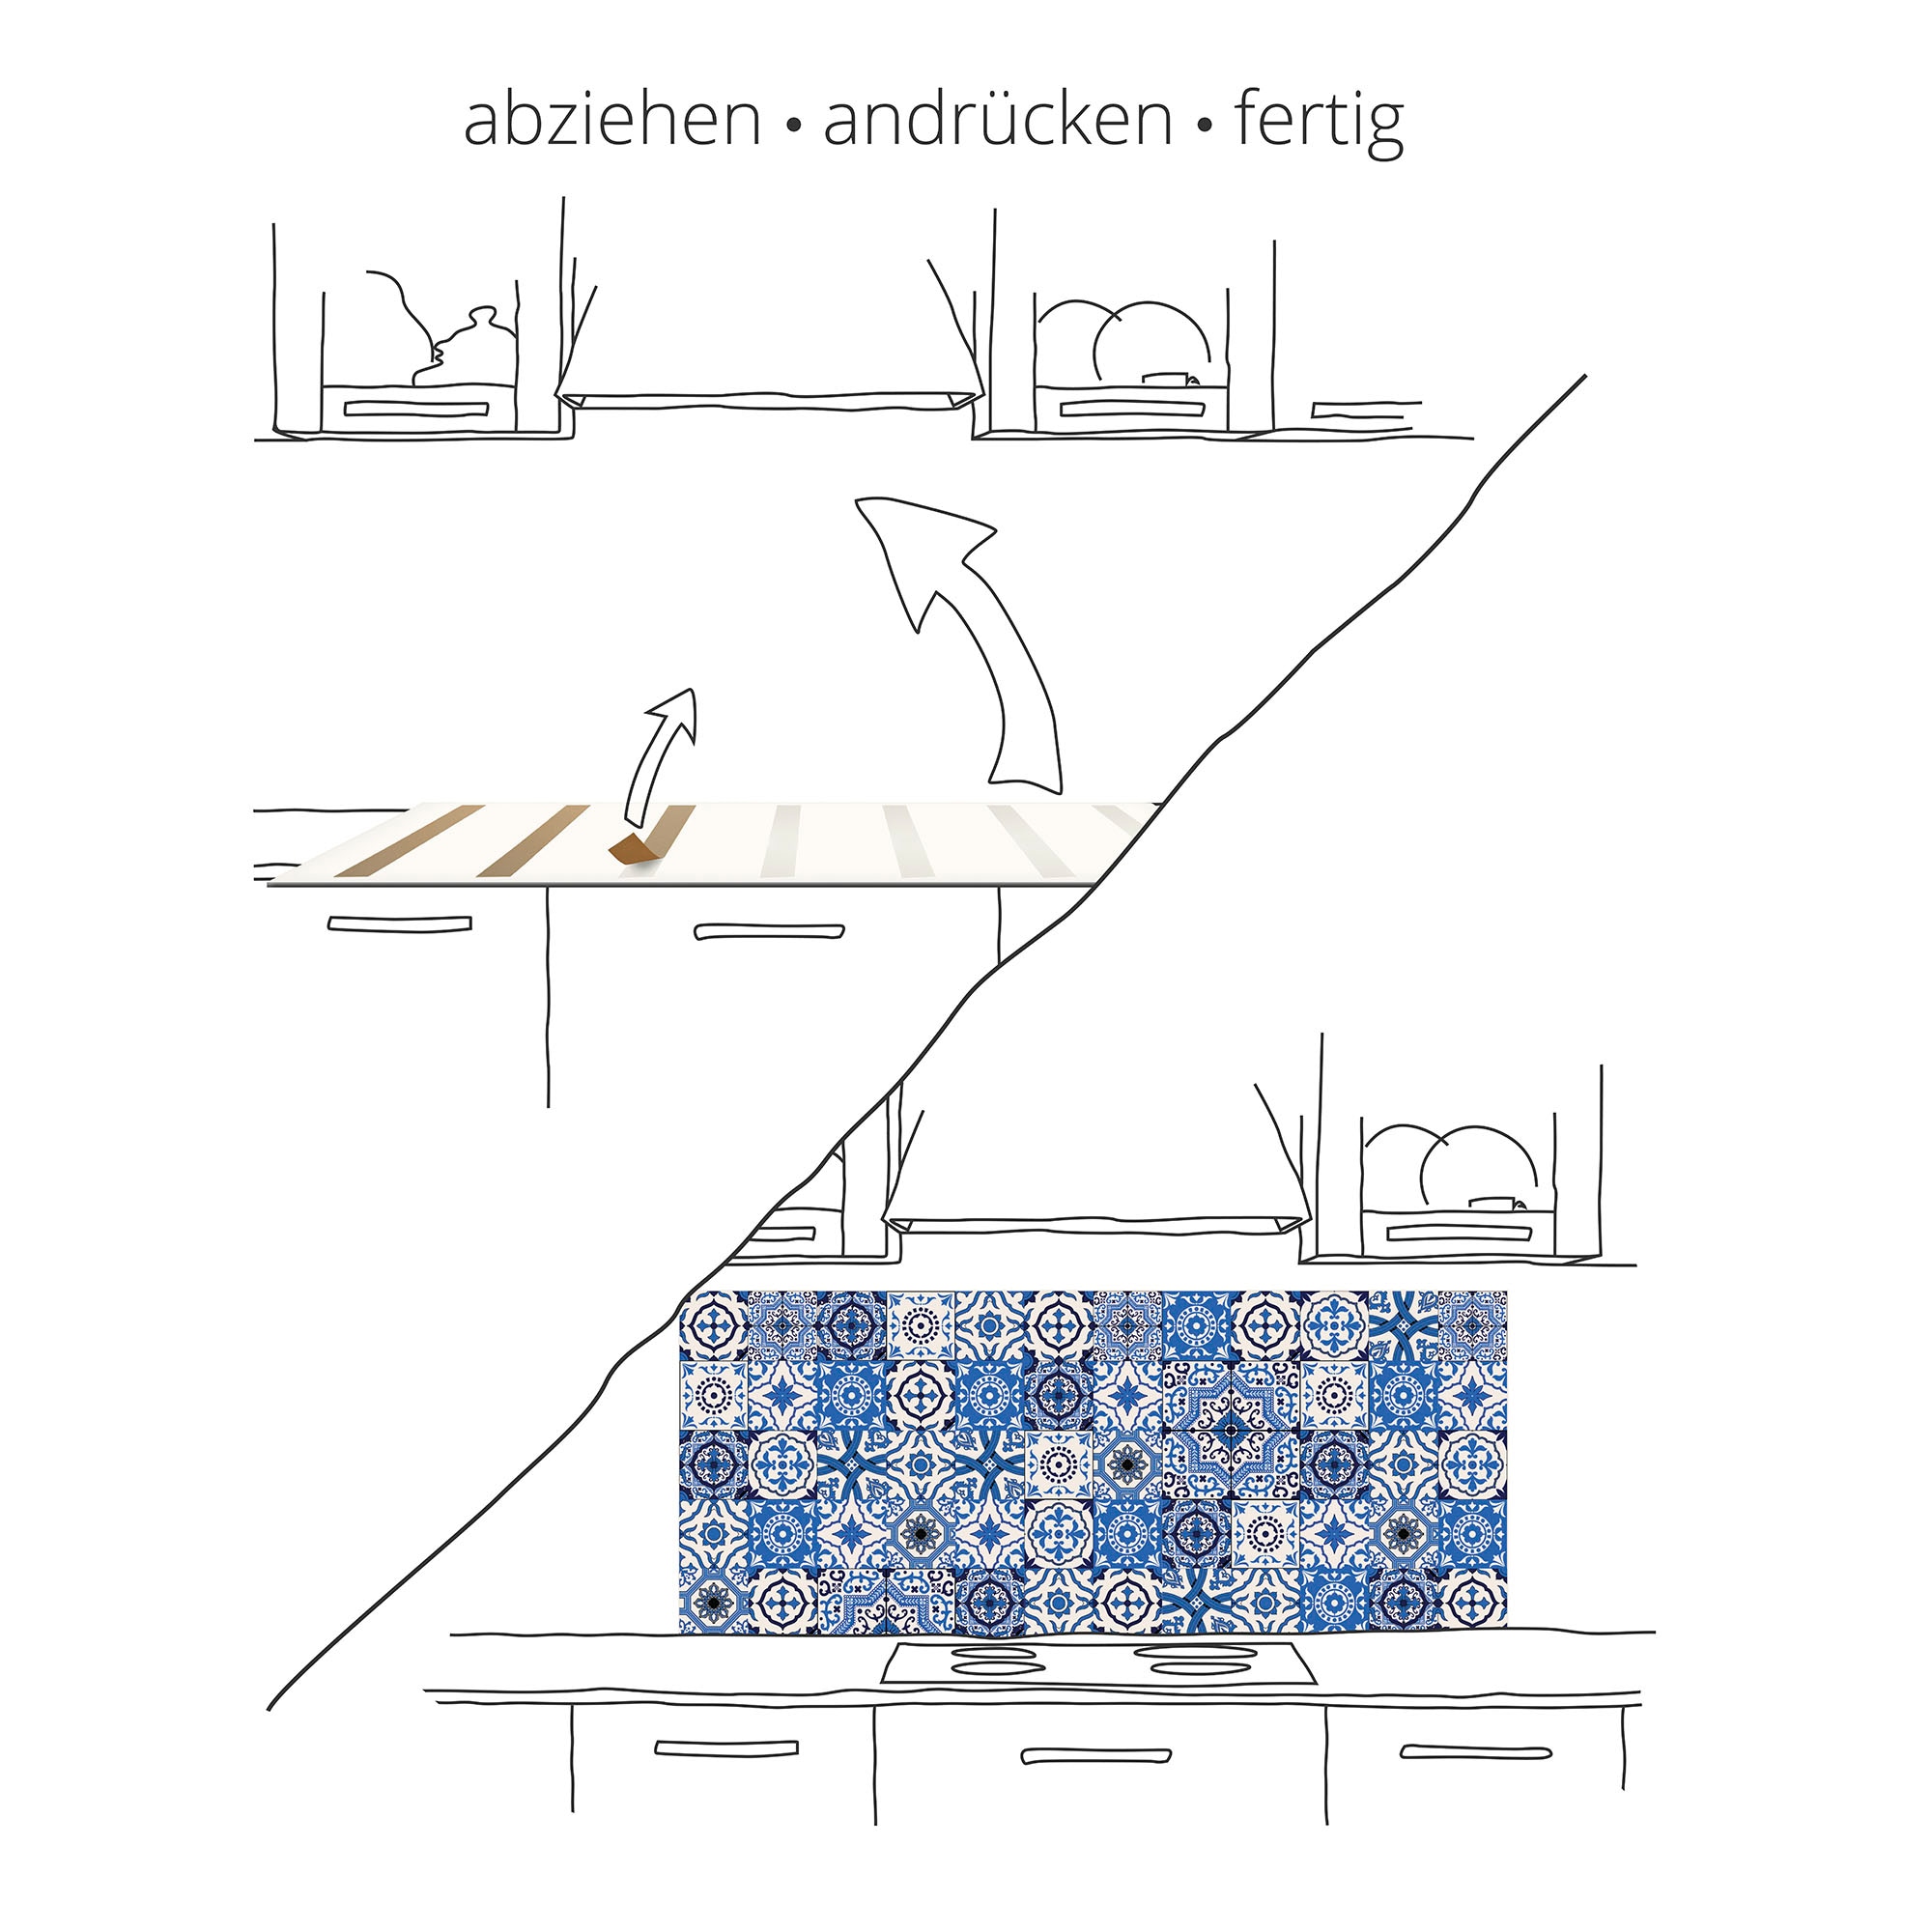 Artland Küchenrückwand »Orange mit Spritzwasser«, (1 tlg.), Alu Spritzschutz mit Klebeband, einfache Montage